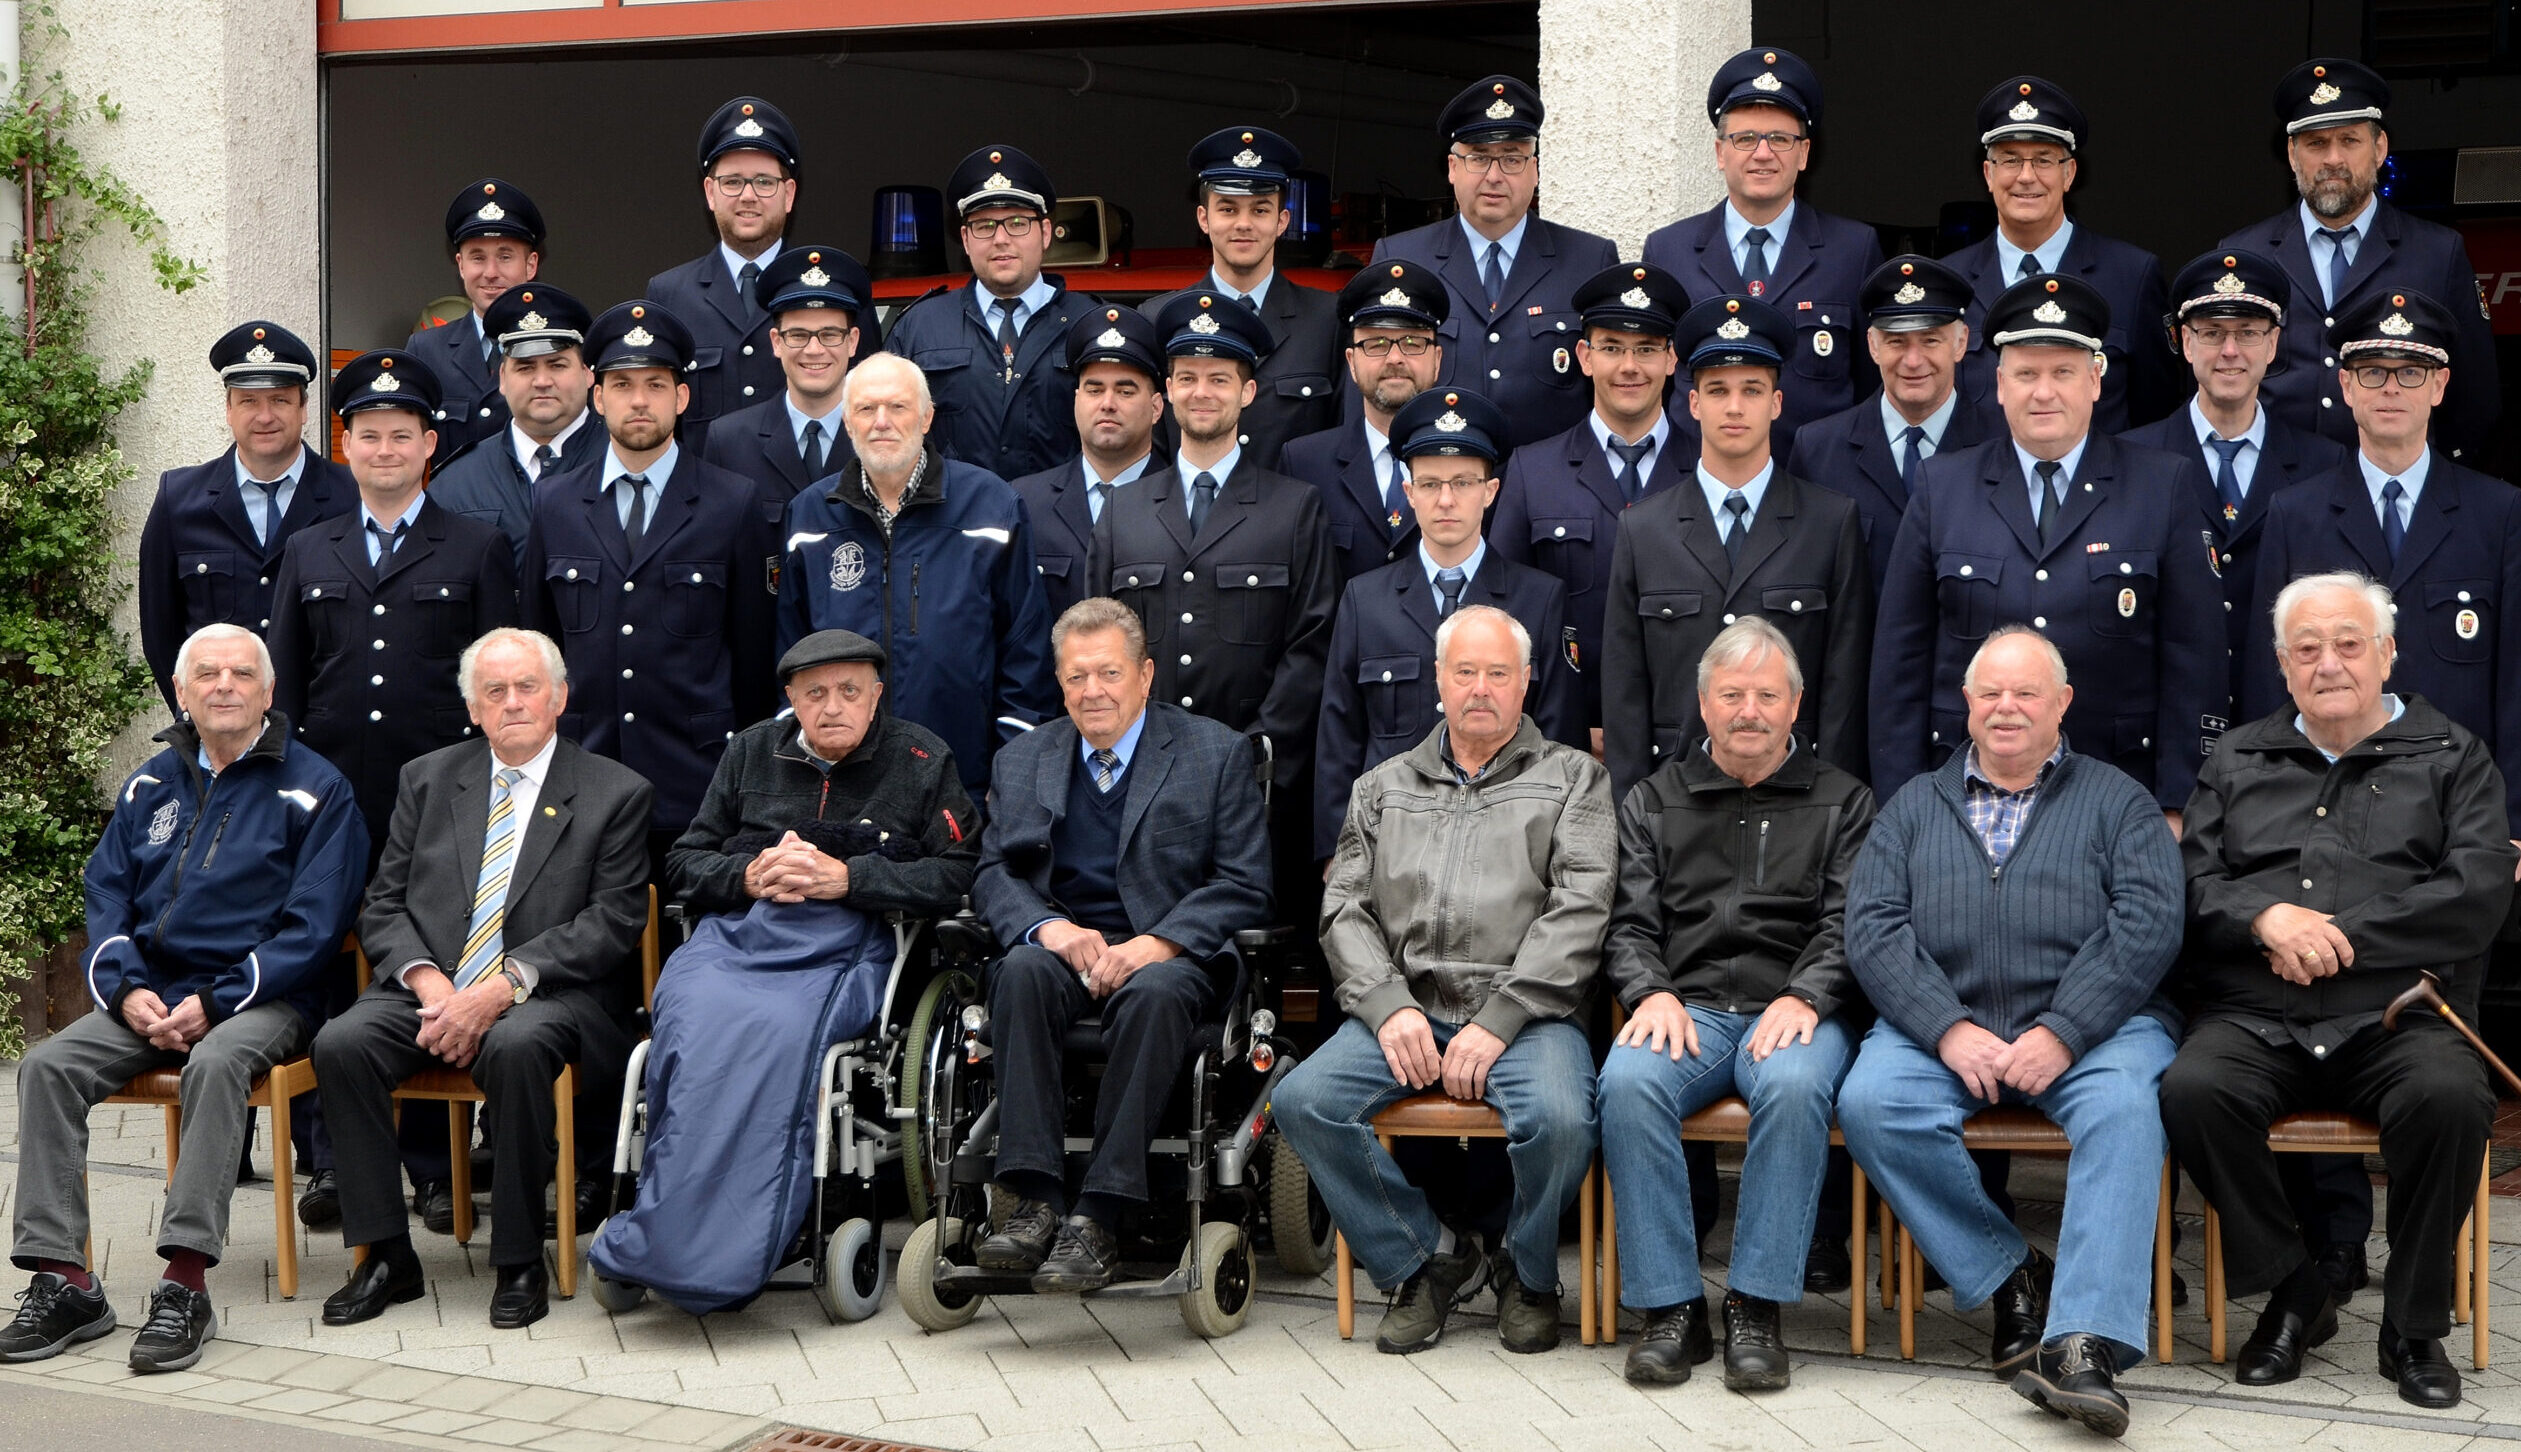 Gruppenbild Aktive- und Alterskammeraden der Freiwilligen Feuerwehr Niederwerth